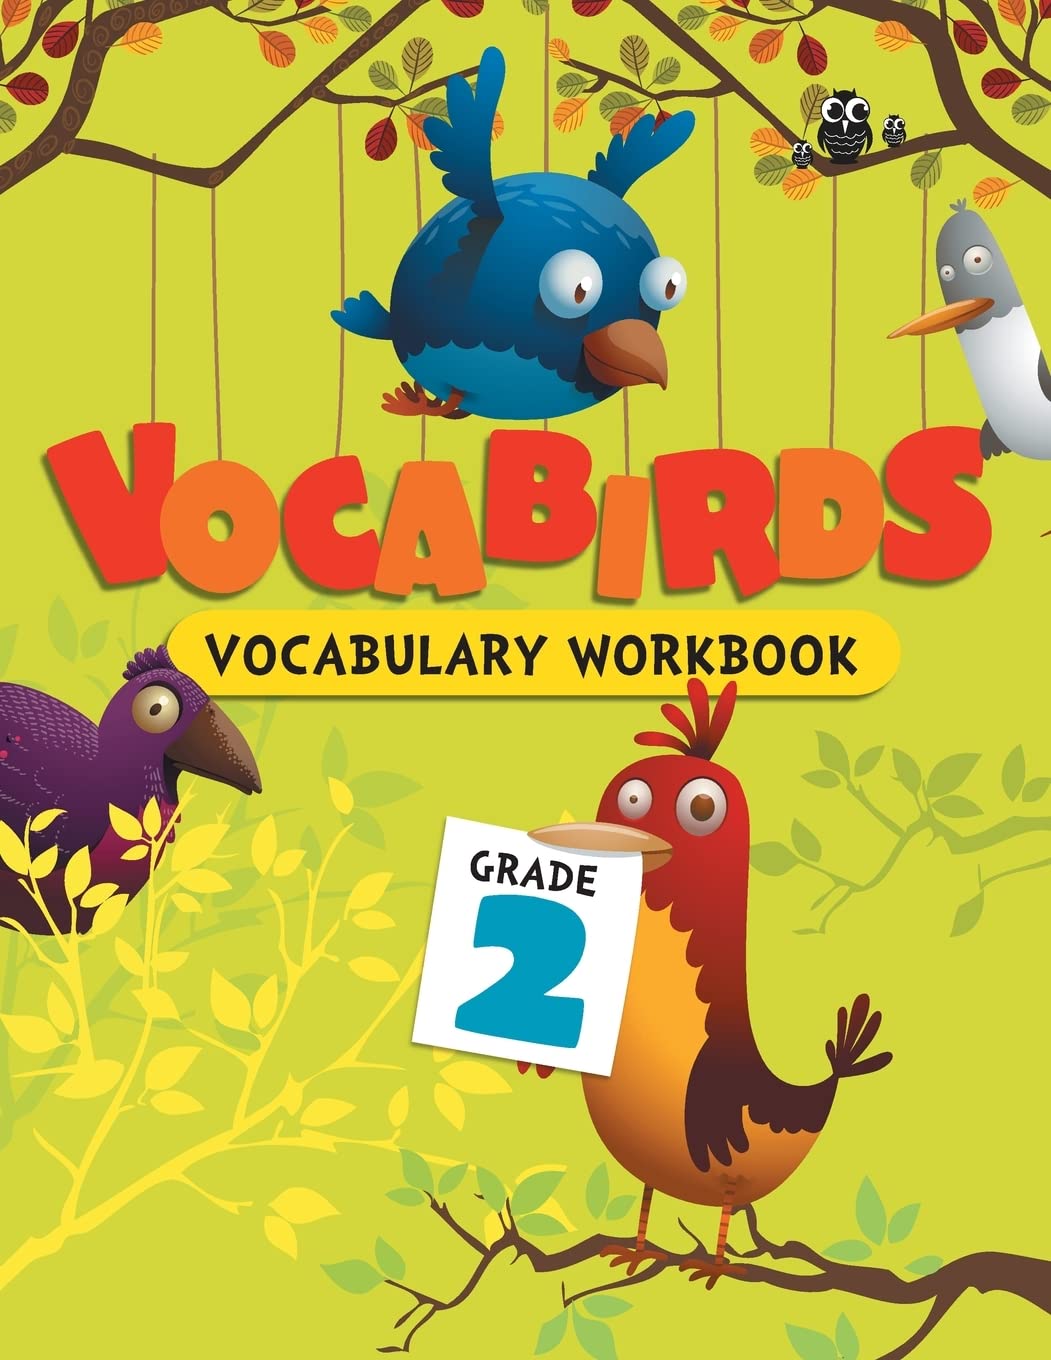 Vocabirds Vocabulary Activity Workbook Grade 2 (পেপারব্যাক)